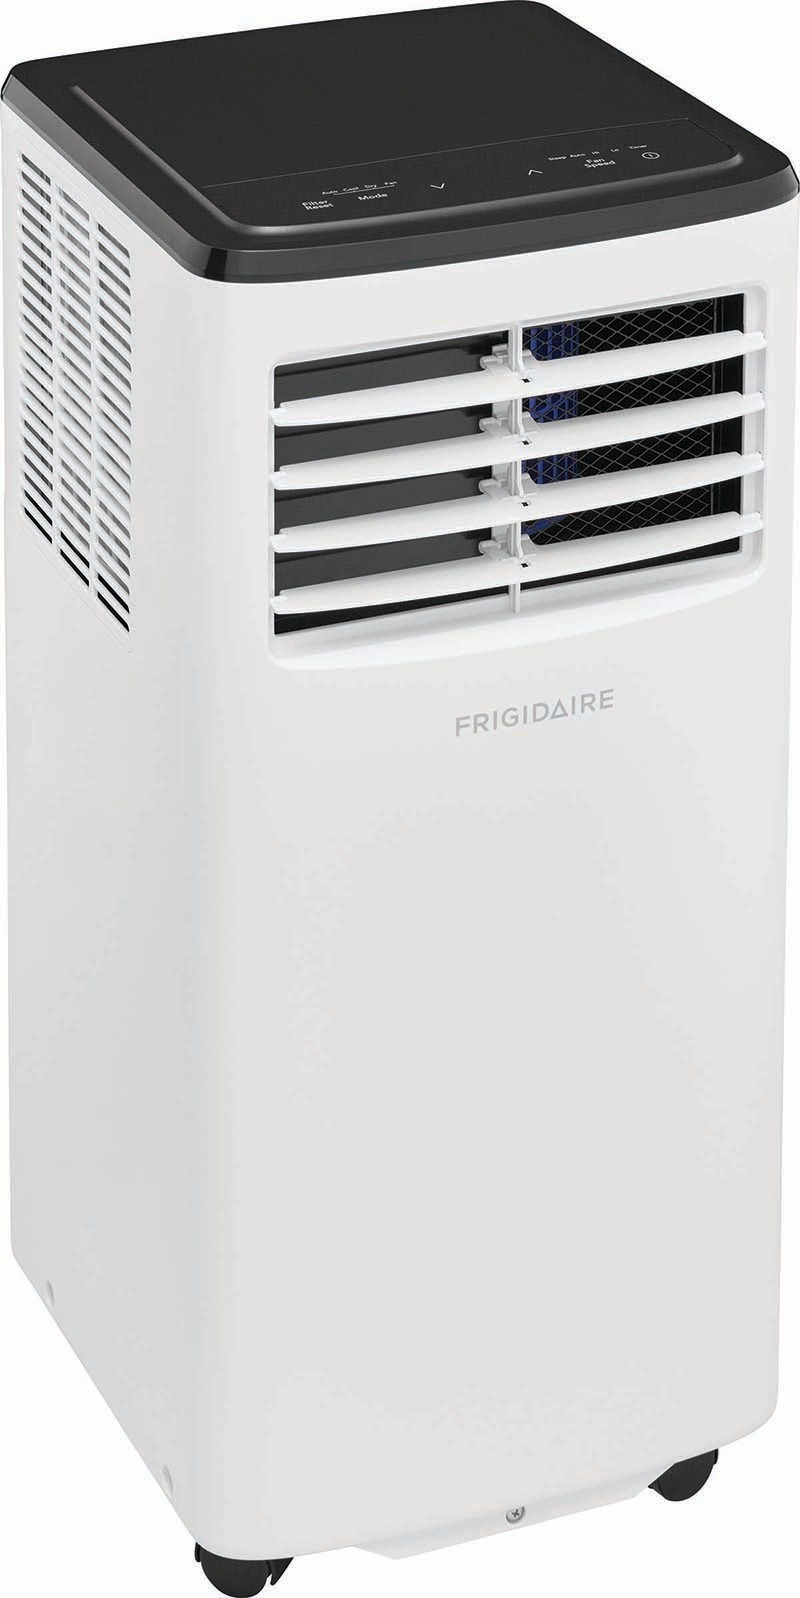 Frigidaire 8 000 BTU Portable Air Conditioner